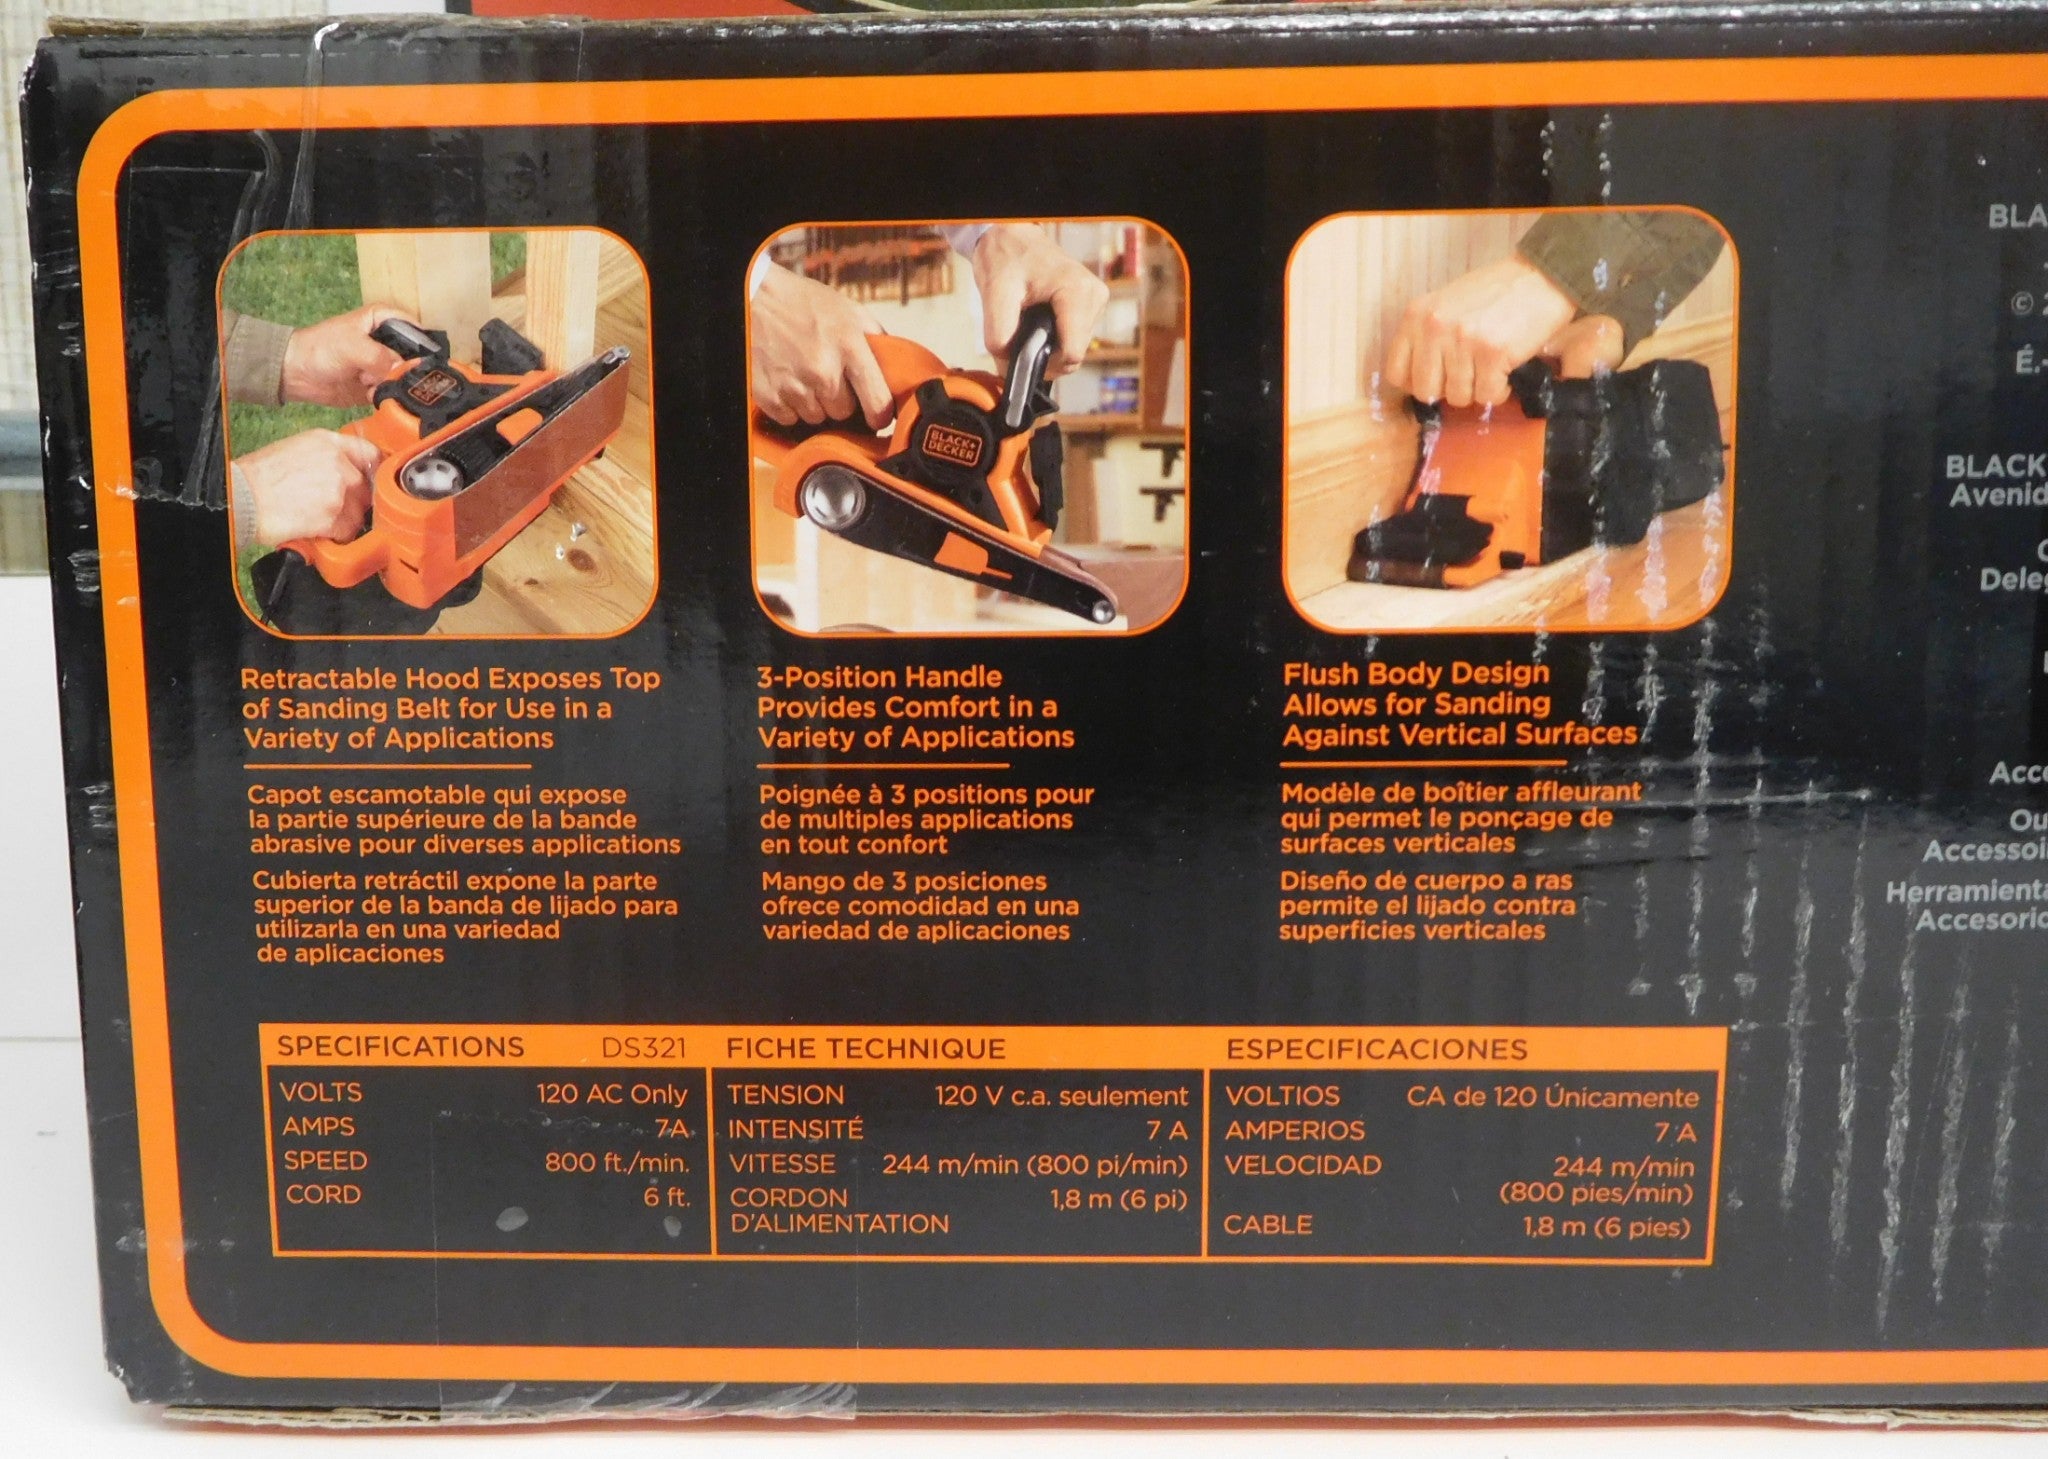 Black and Decker DS321 Belt Sander, 3 x 21, Orange